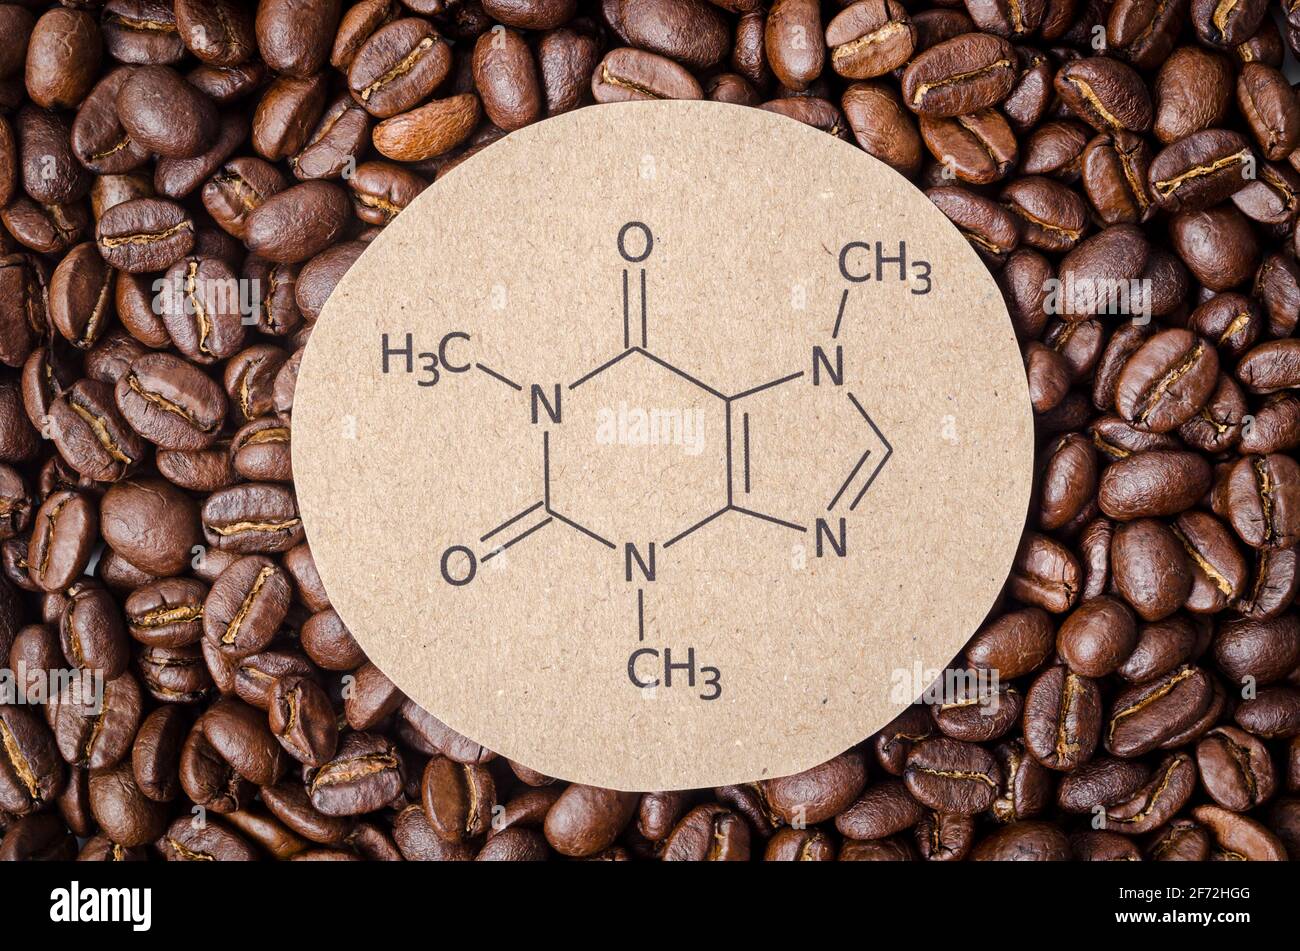 Formule chimique structurale de la molécule de caféine avec des grains de café torréfiés. La caféine est une molécule psychoactive de médicament stimulant le système nerveux central Banque D'Images